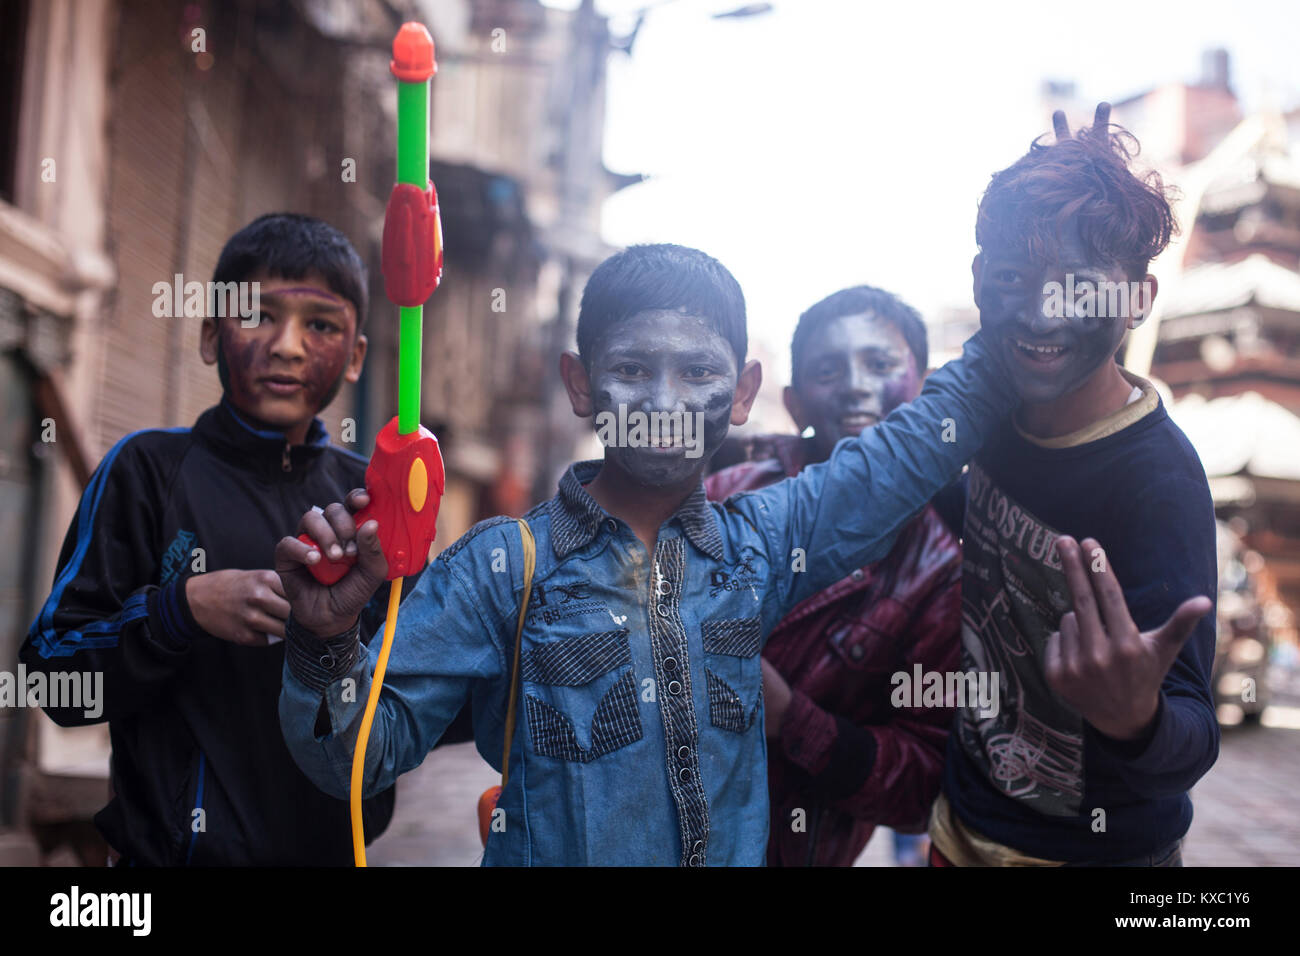 Les jeunes garçons posent pour une photo lors d'un festival de holi à Katmandou, au Népal. Banque D'Images